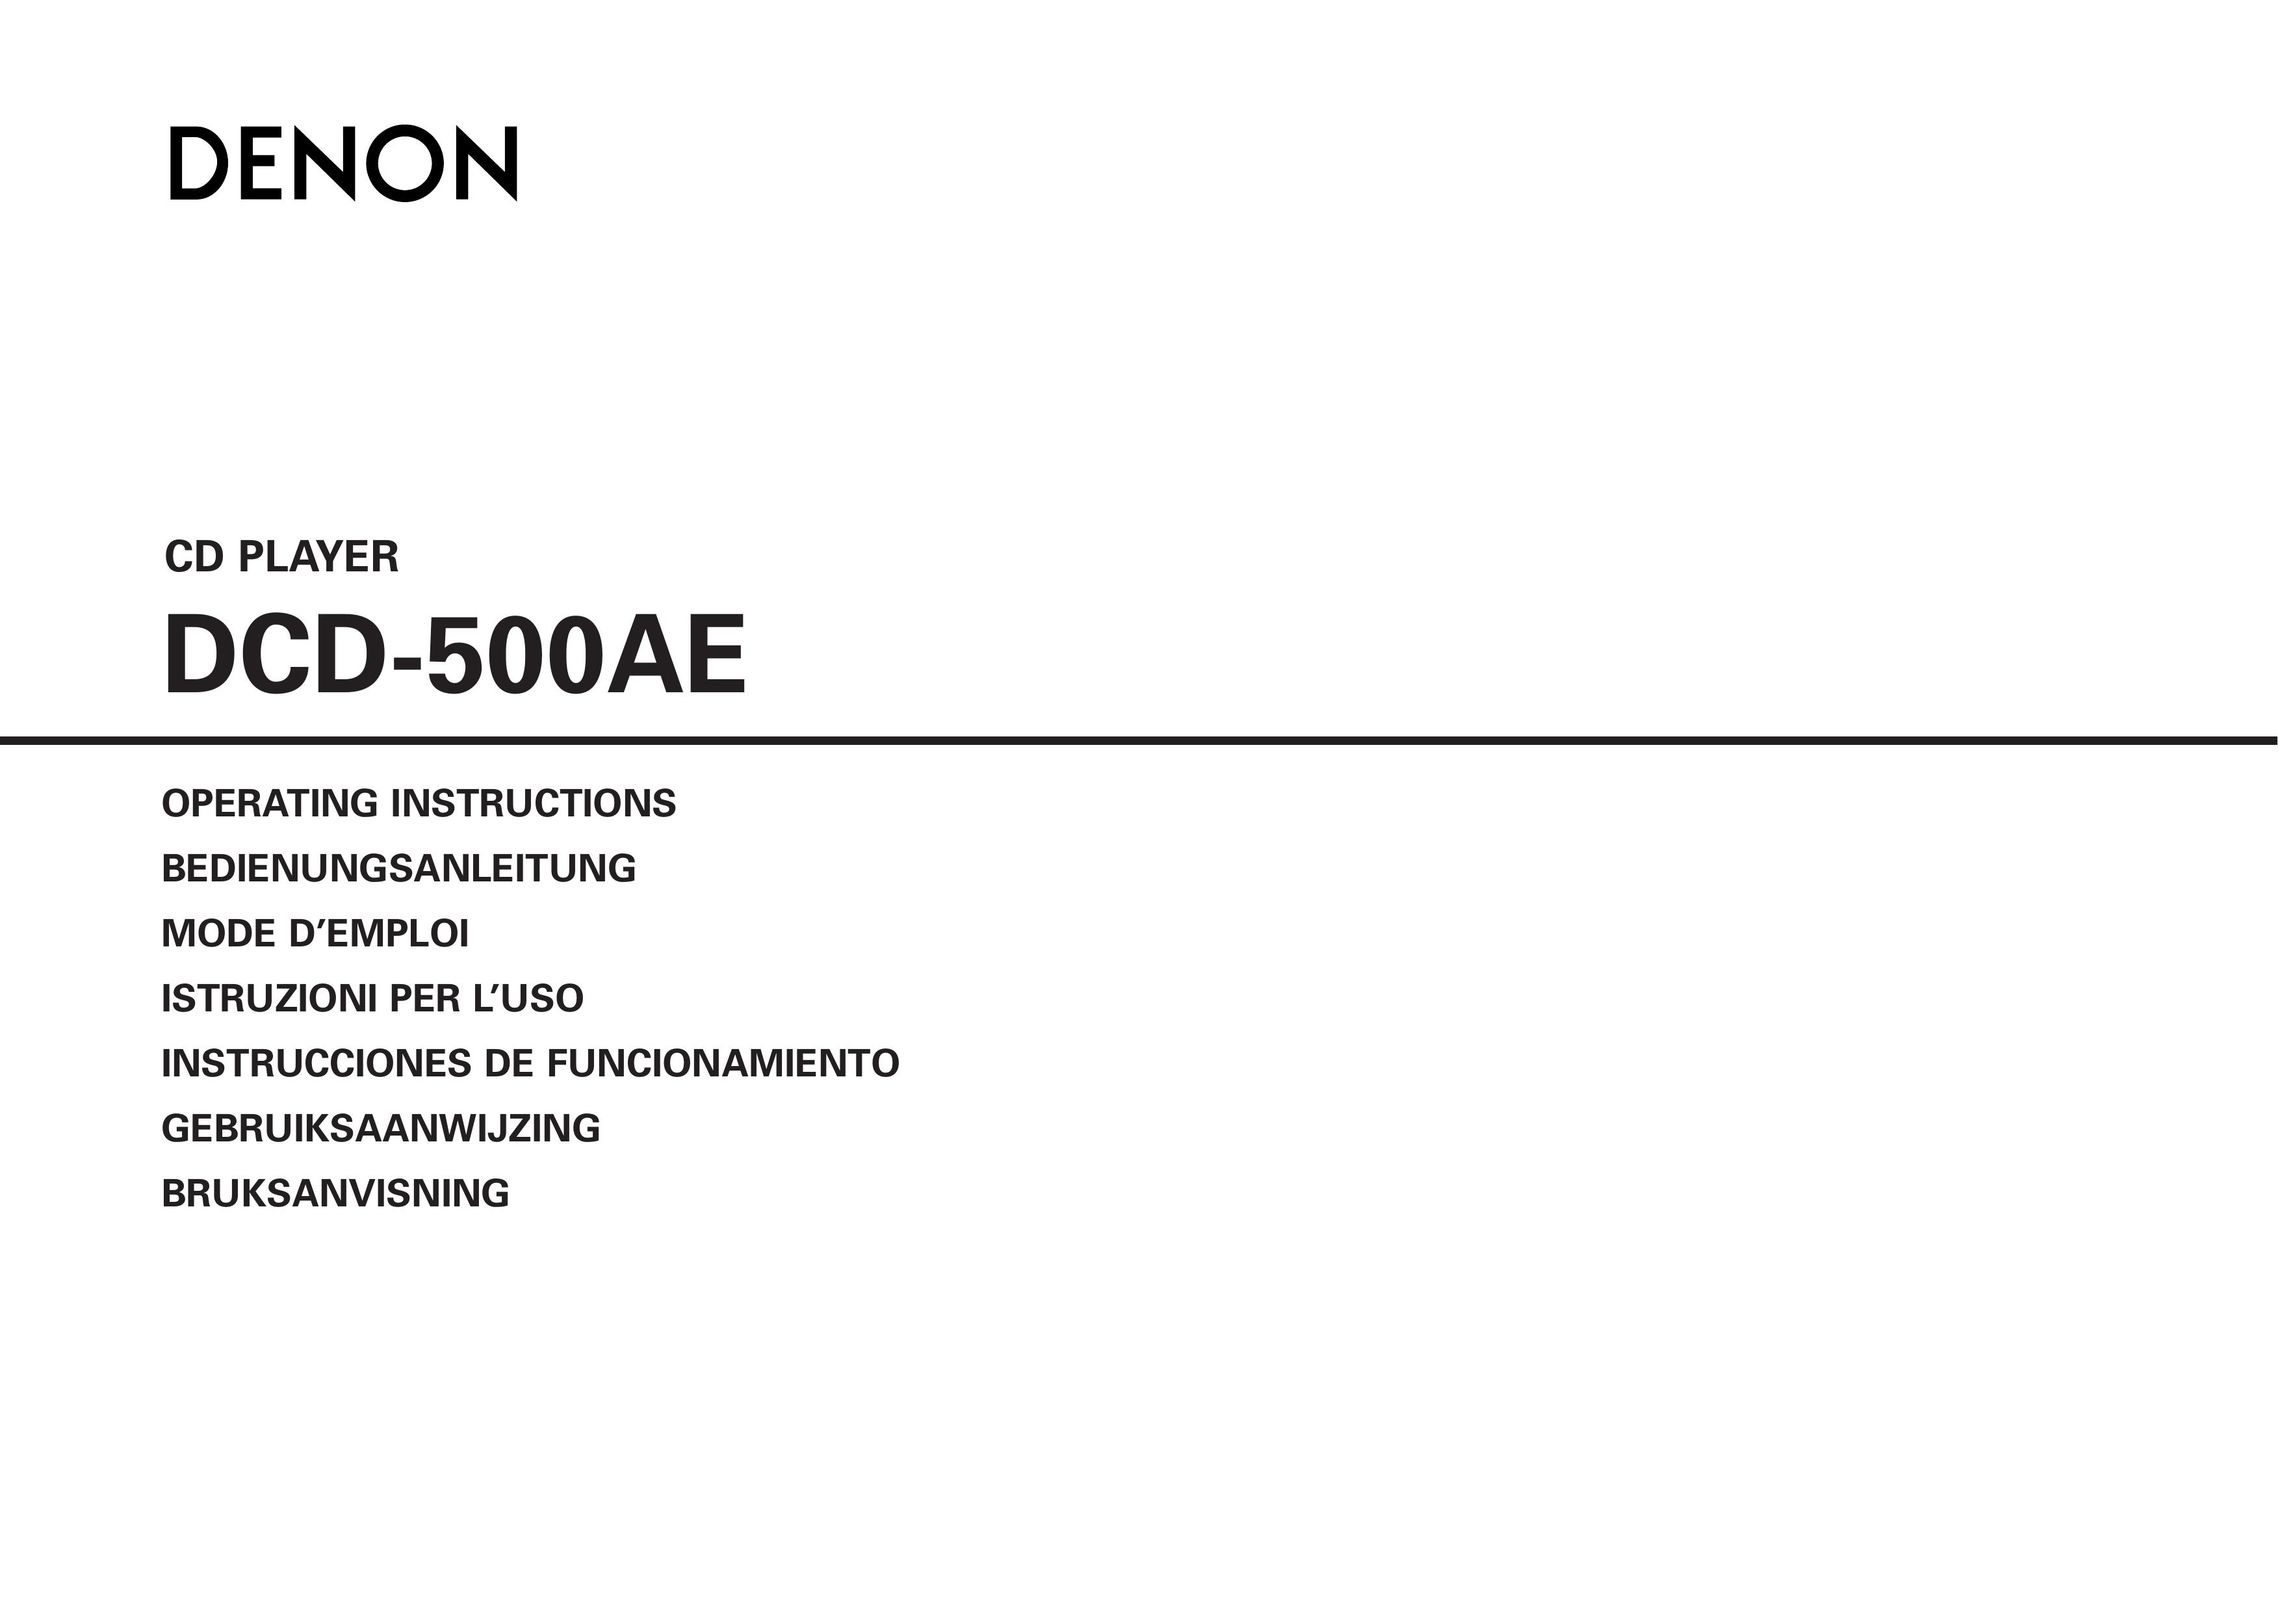 Denon DCD-500AE CD Player User Manual